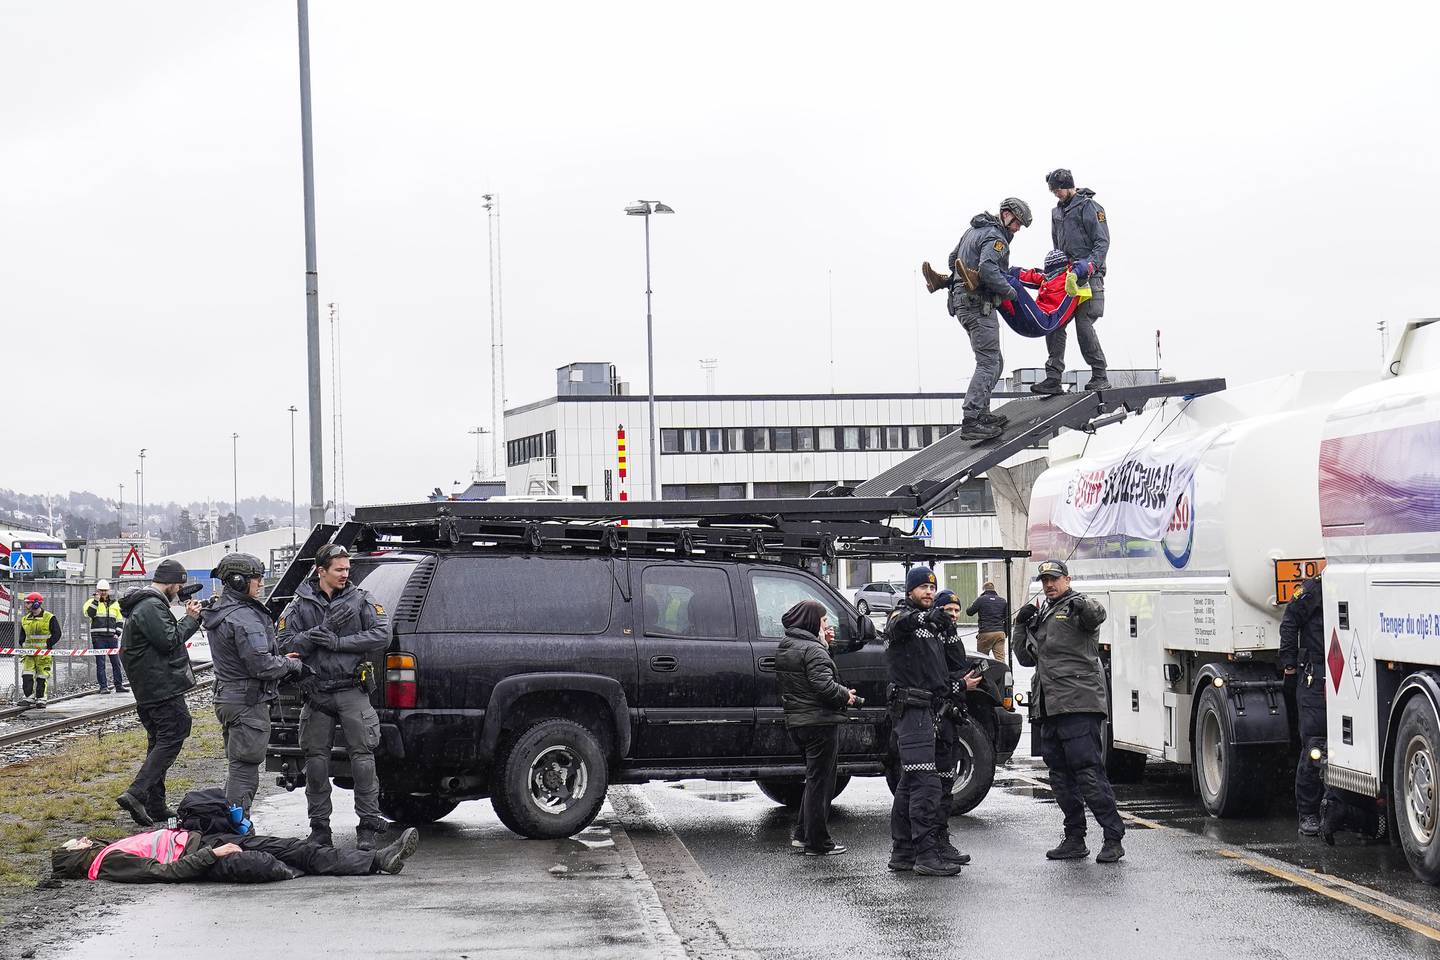 Politiet i Oslo har fått mye ekstraarbeid på grunn av aksjonistene fra Extinction Rebellion, som på ulike måter har blokkert oljeterminalen på Sjursøya i mange timer med jevne mellomrom de seneste to ukene.